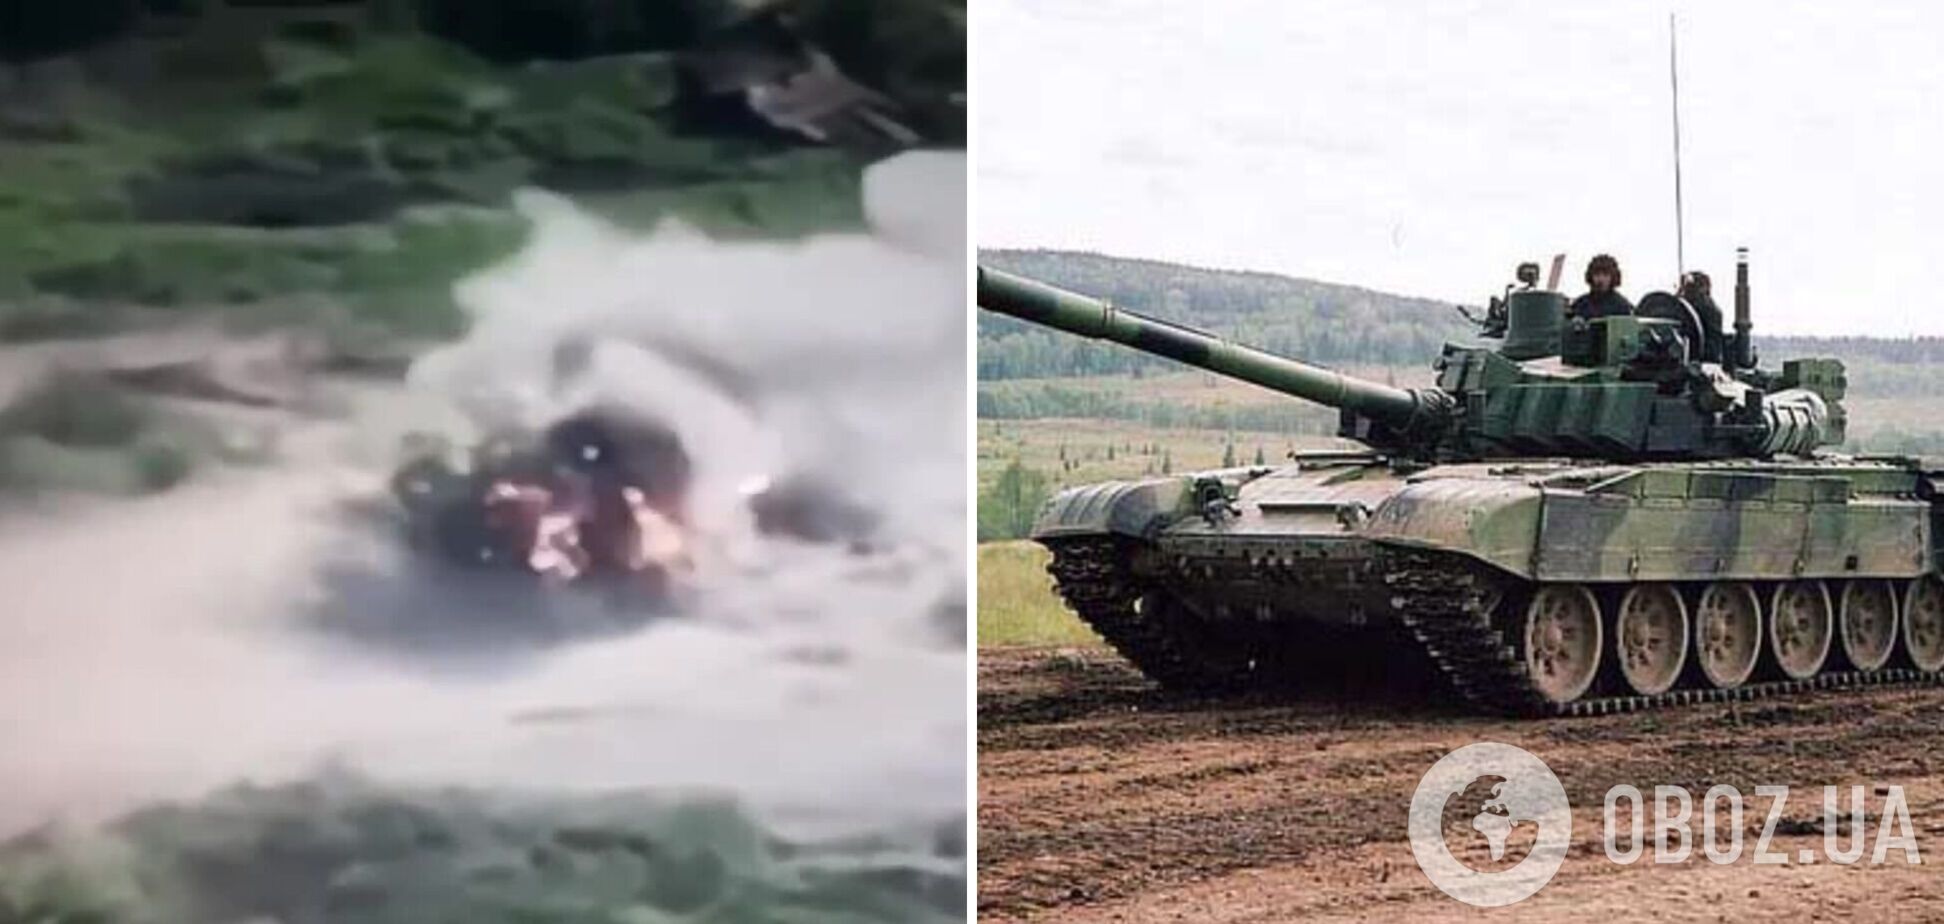 Українські захисники показали ефектні кадри знищення танка РФ: розлетівся на частини. Відео